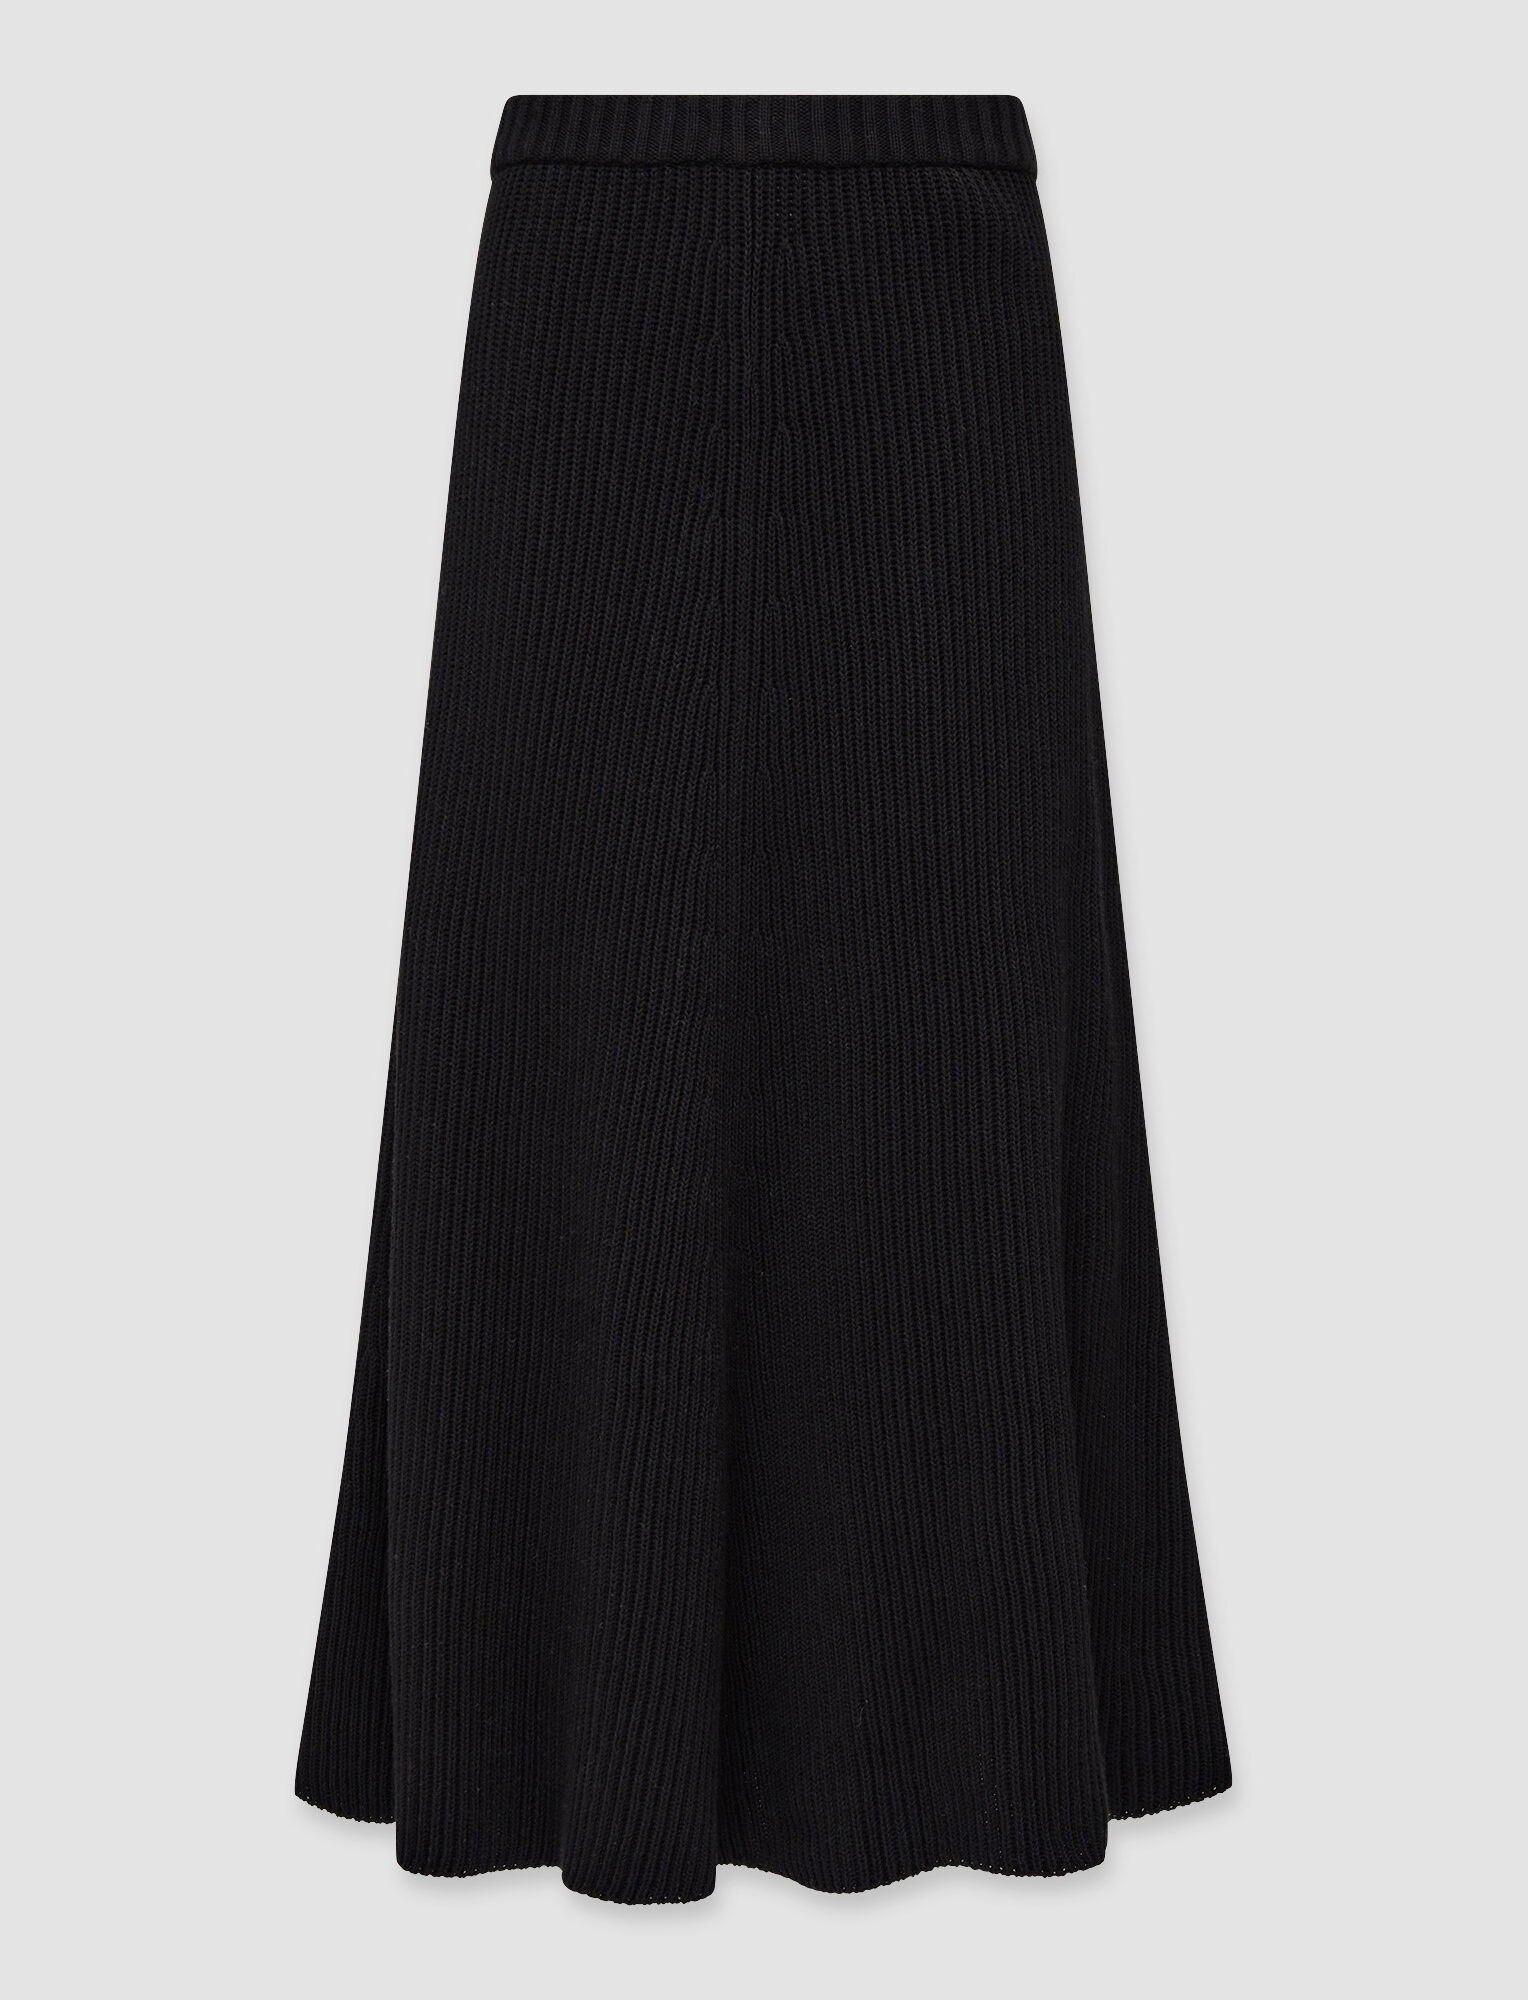 Joseph, Egyptian Cotton Skirt, in Black